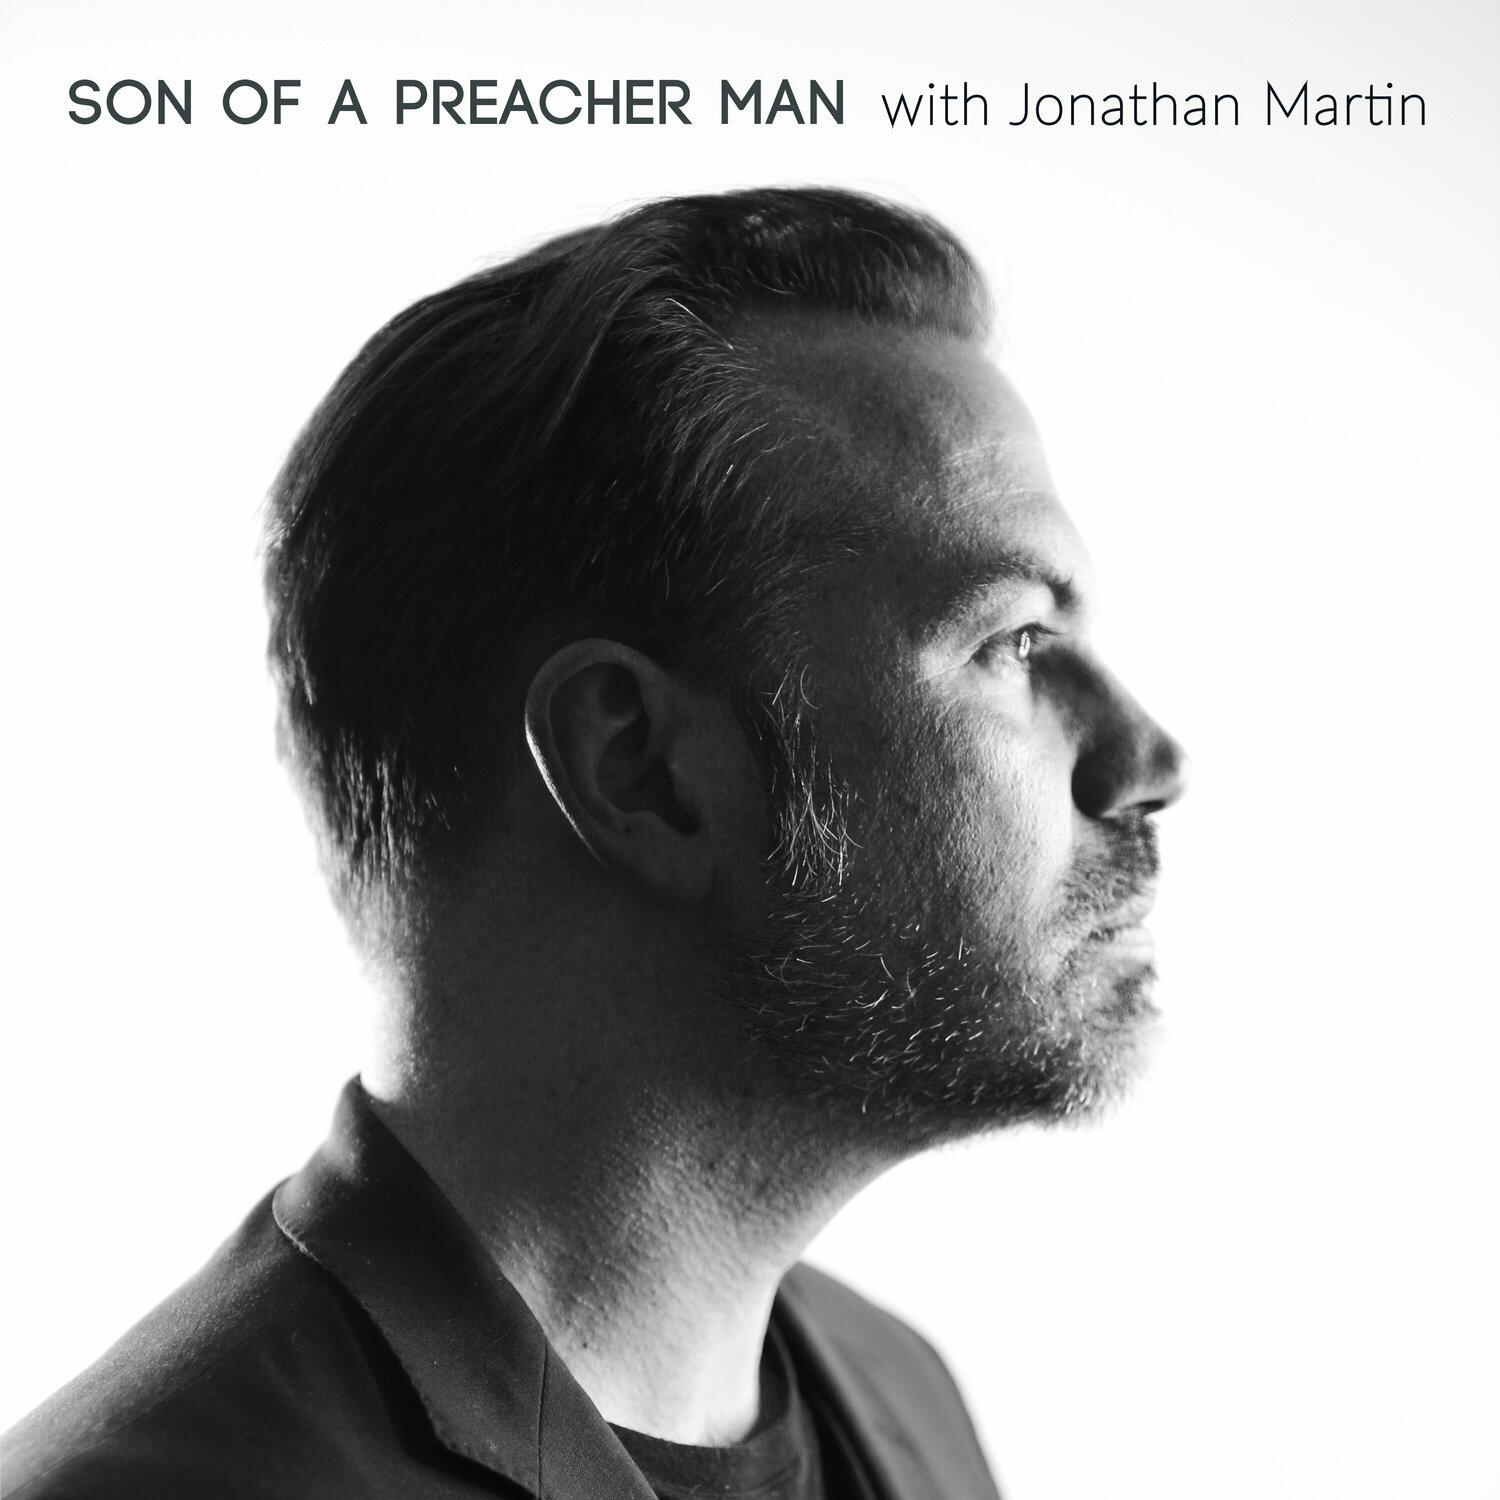 Preacher man. Son of a Preacher man. Son of Preacher man Жанр. Podcast man. Preacher's son